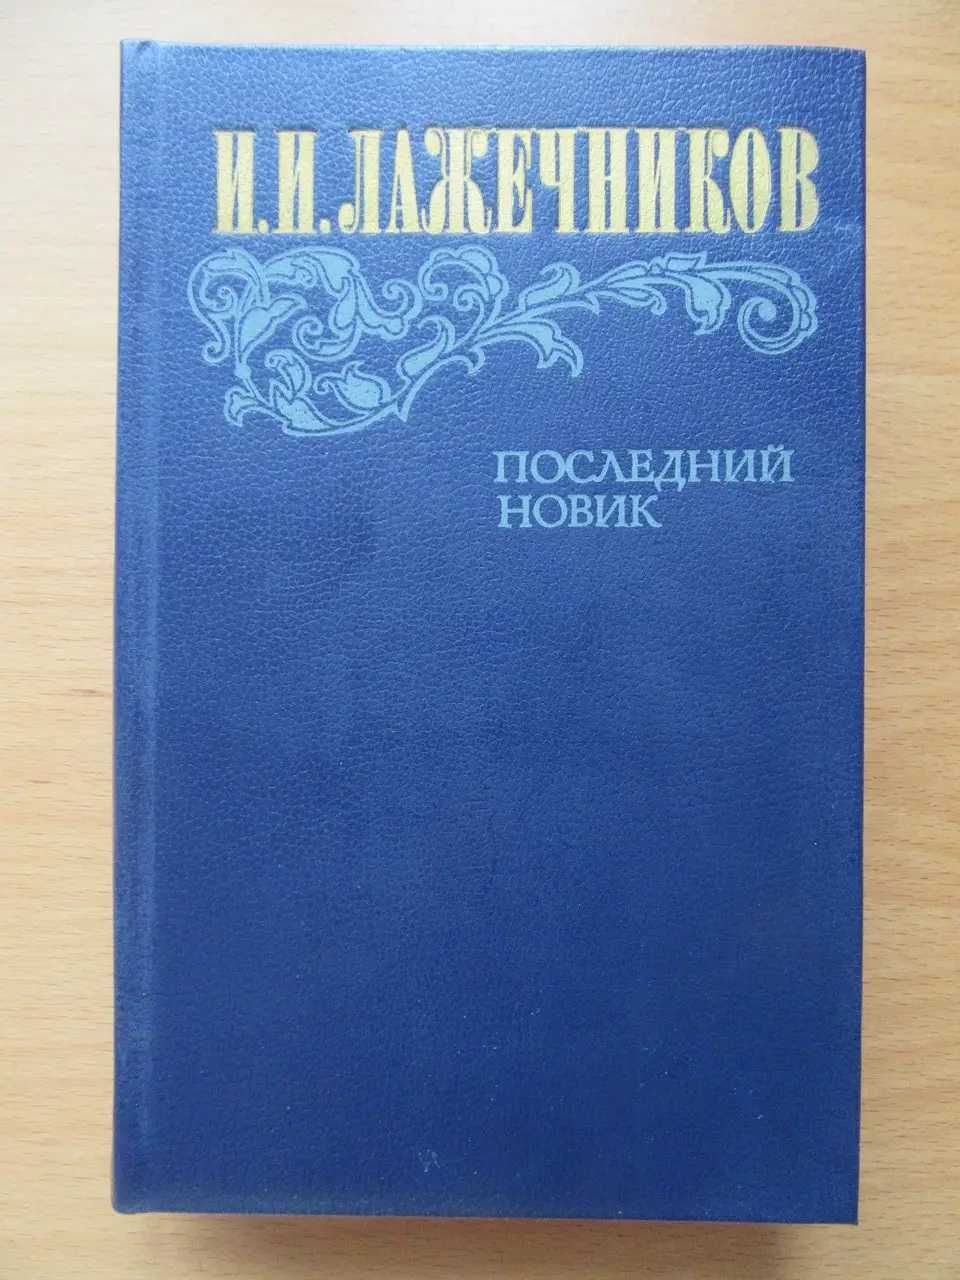 Емельян Пугачев. В.Я.Шишков. 3 тома. 1985 г.